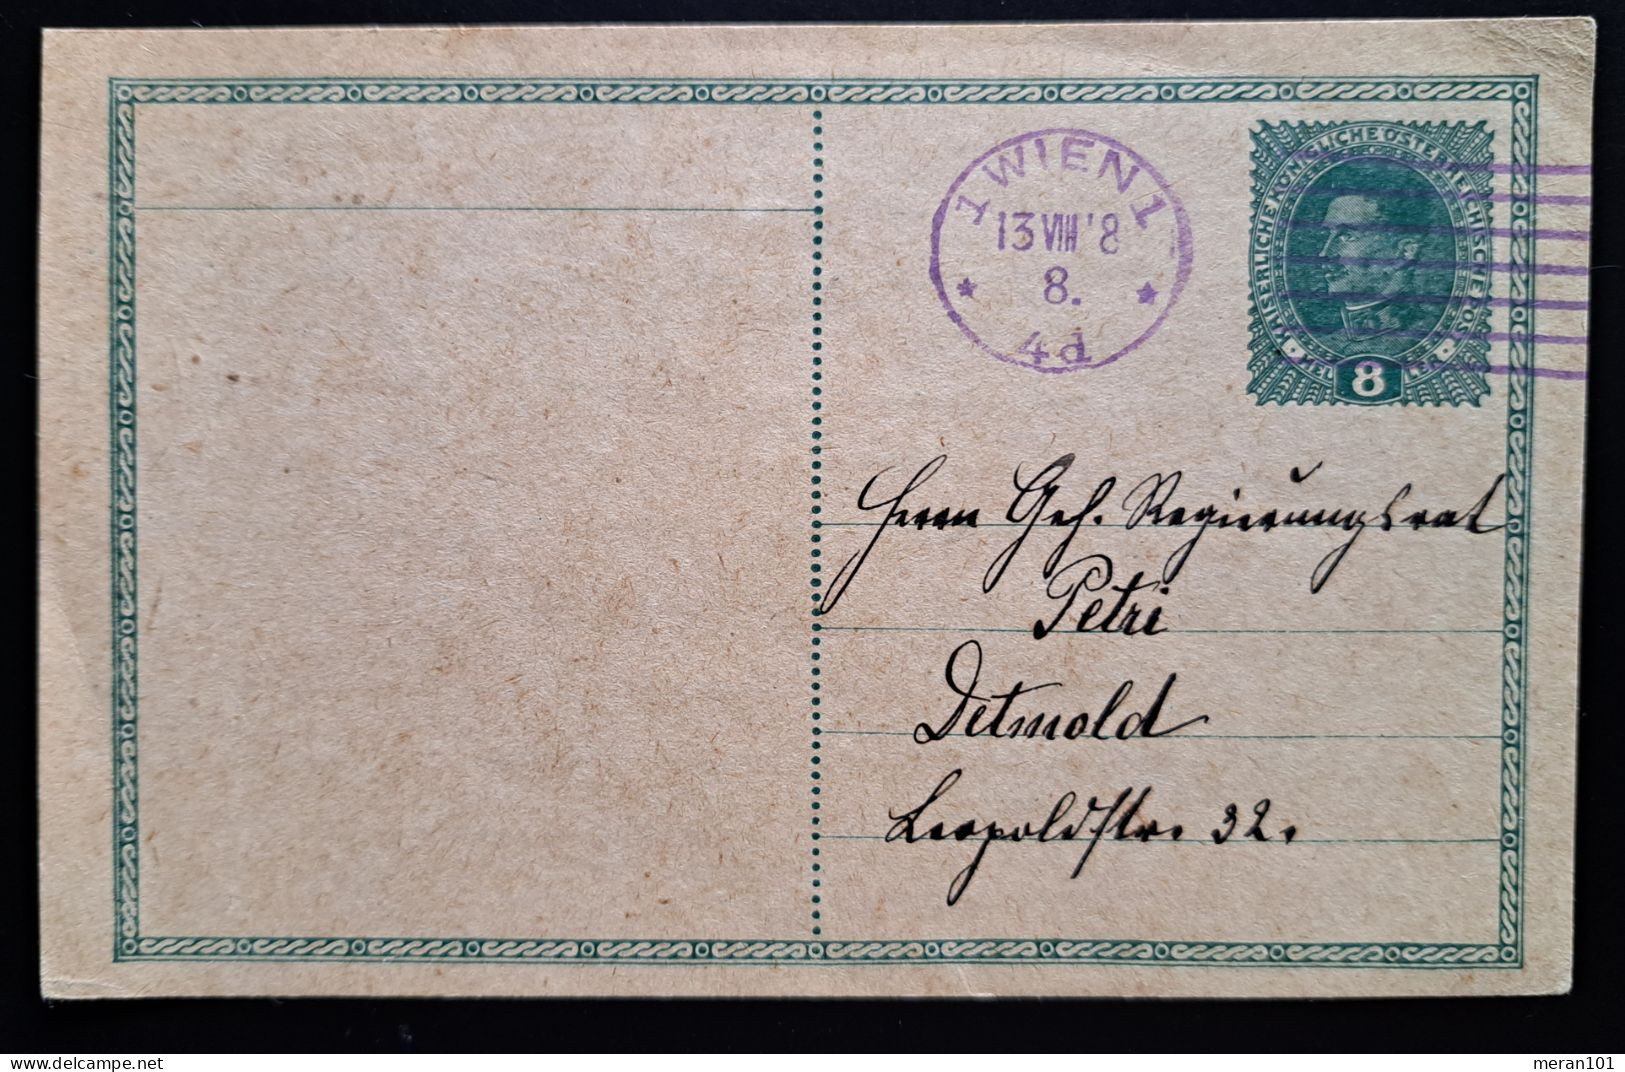 Österreich 1918, Postkarte 8 Heller WIEN - Briefe U. Dokumente